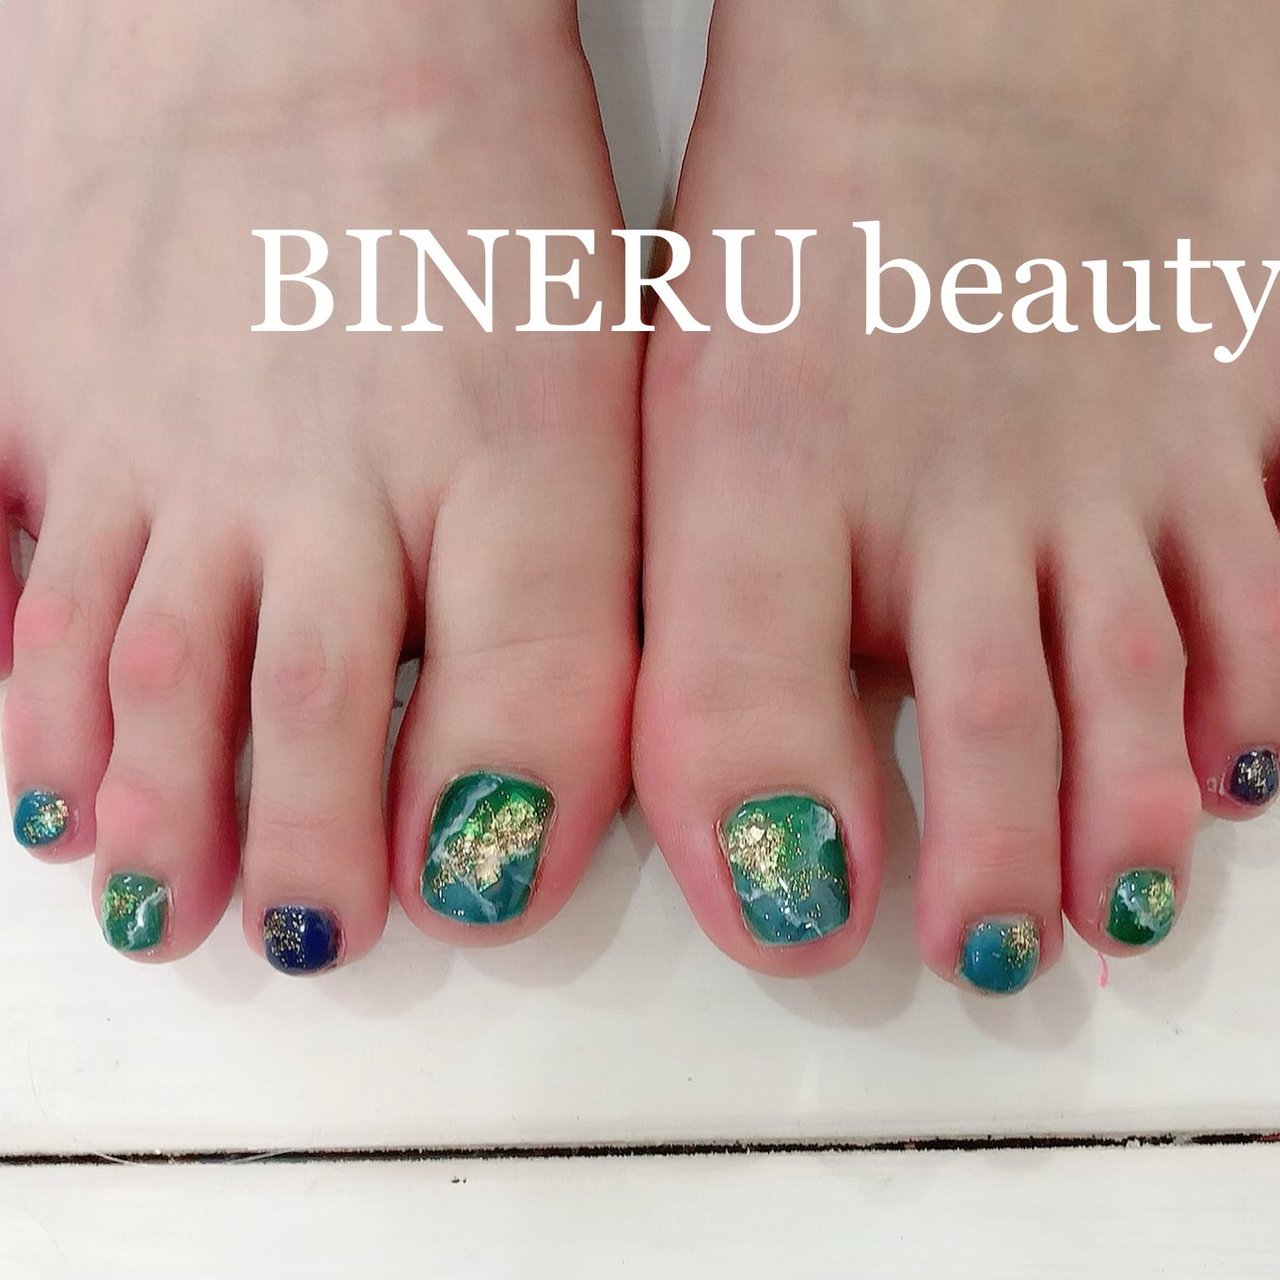 Bineru Beautyのネイルデザイン No ネイルブック